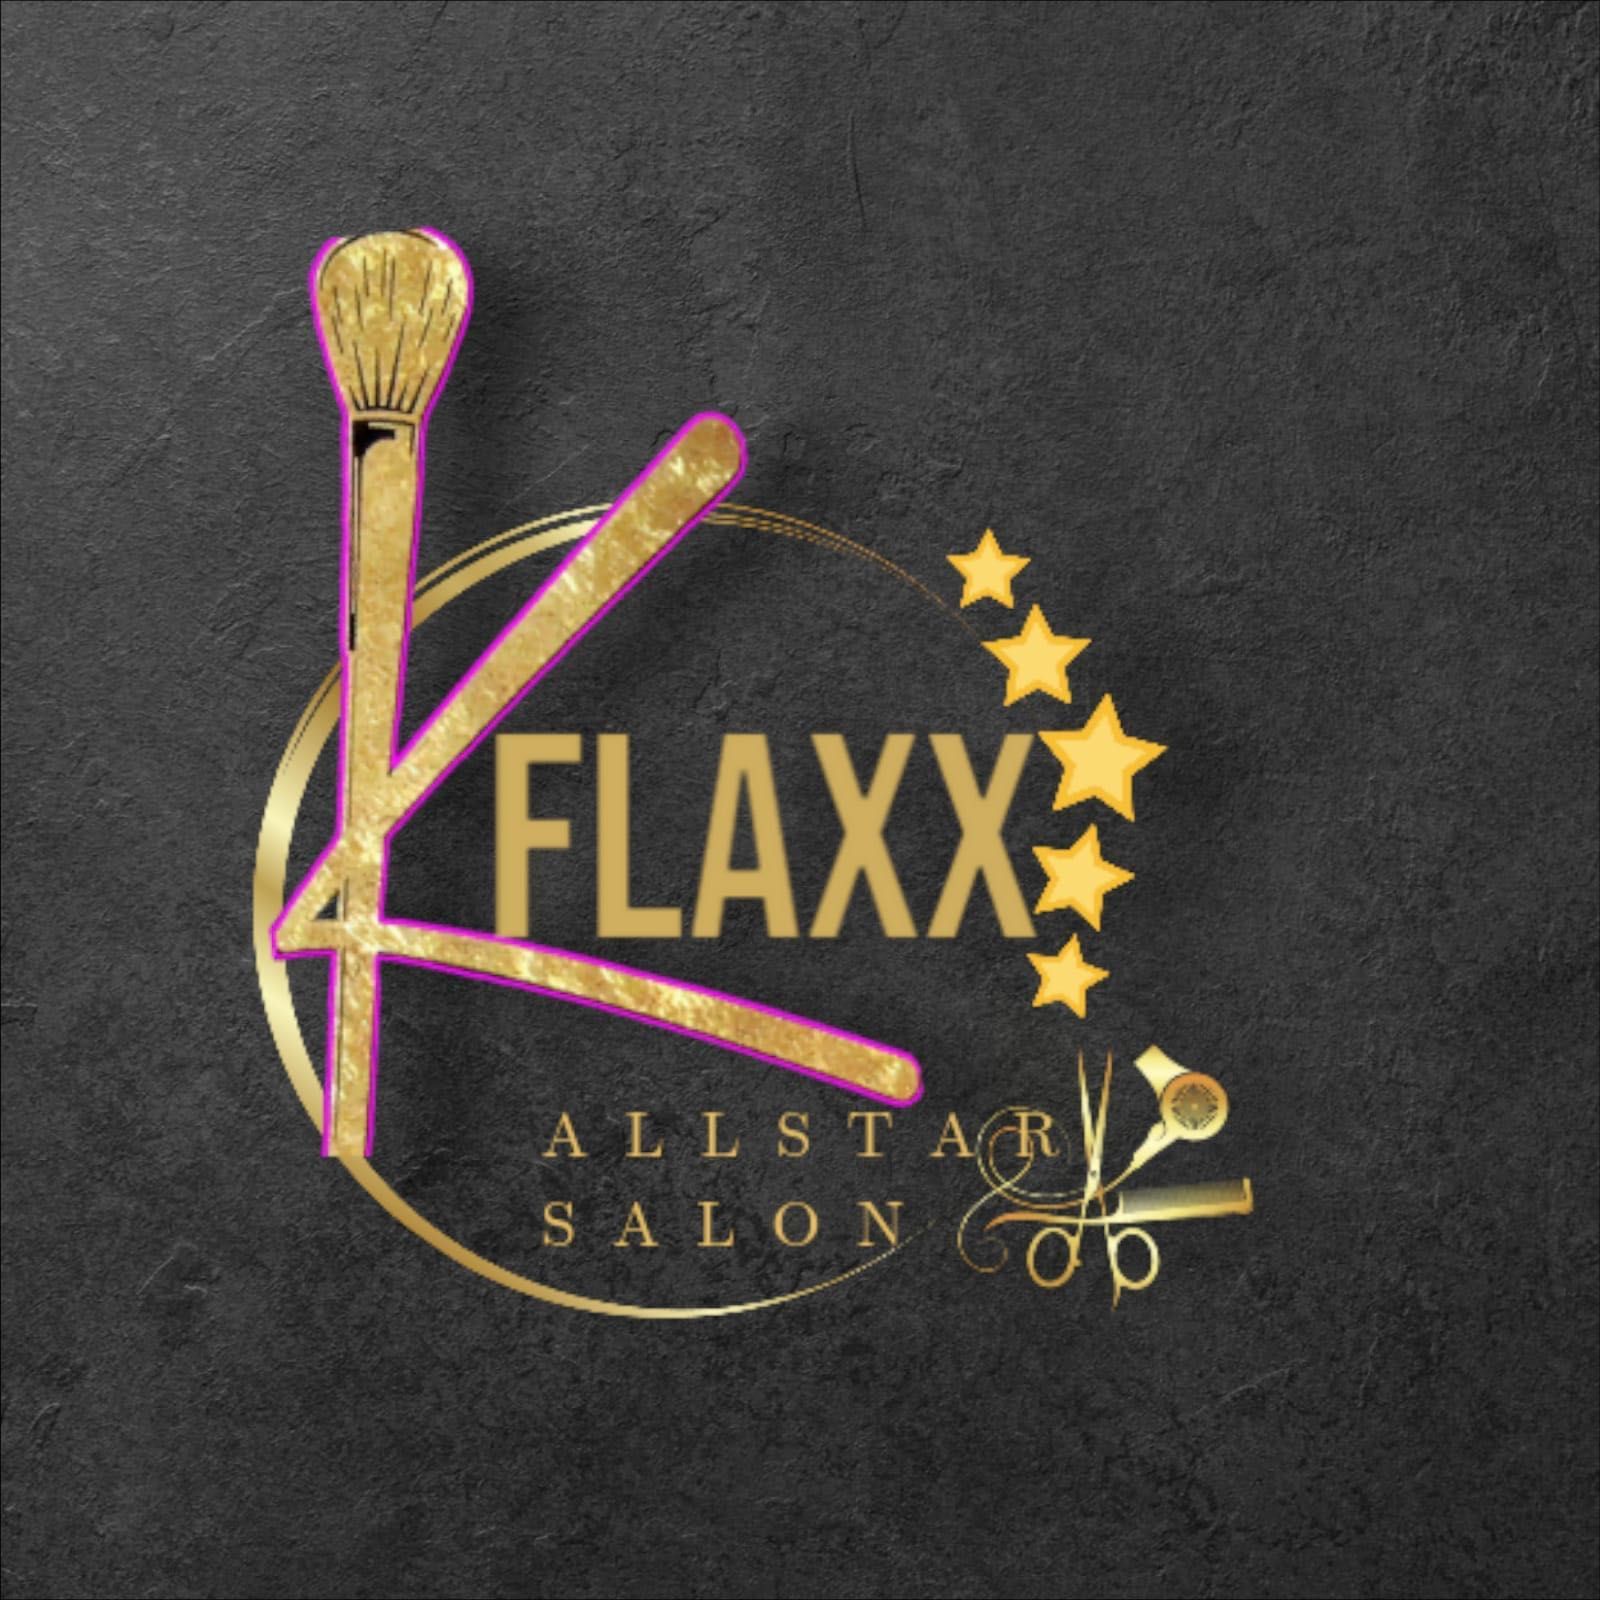 Kflaxx All Star Salons, 2044, Riviera Beach, 33404